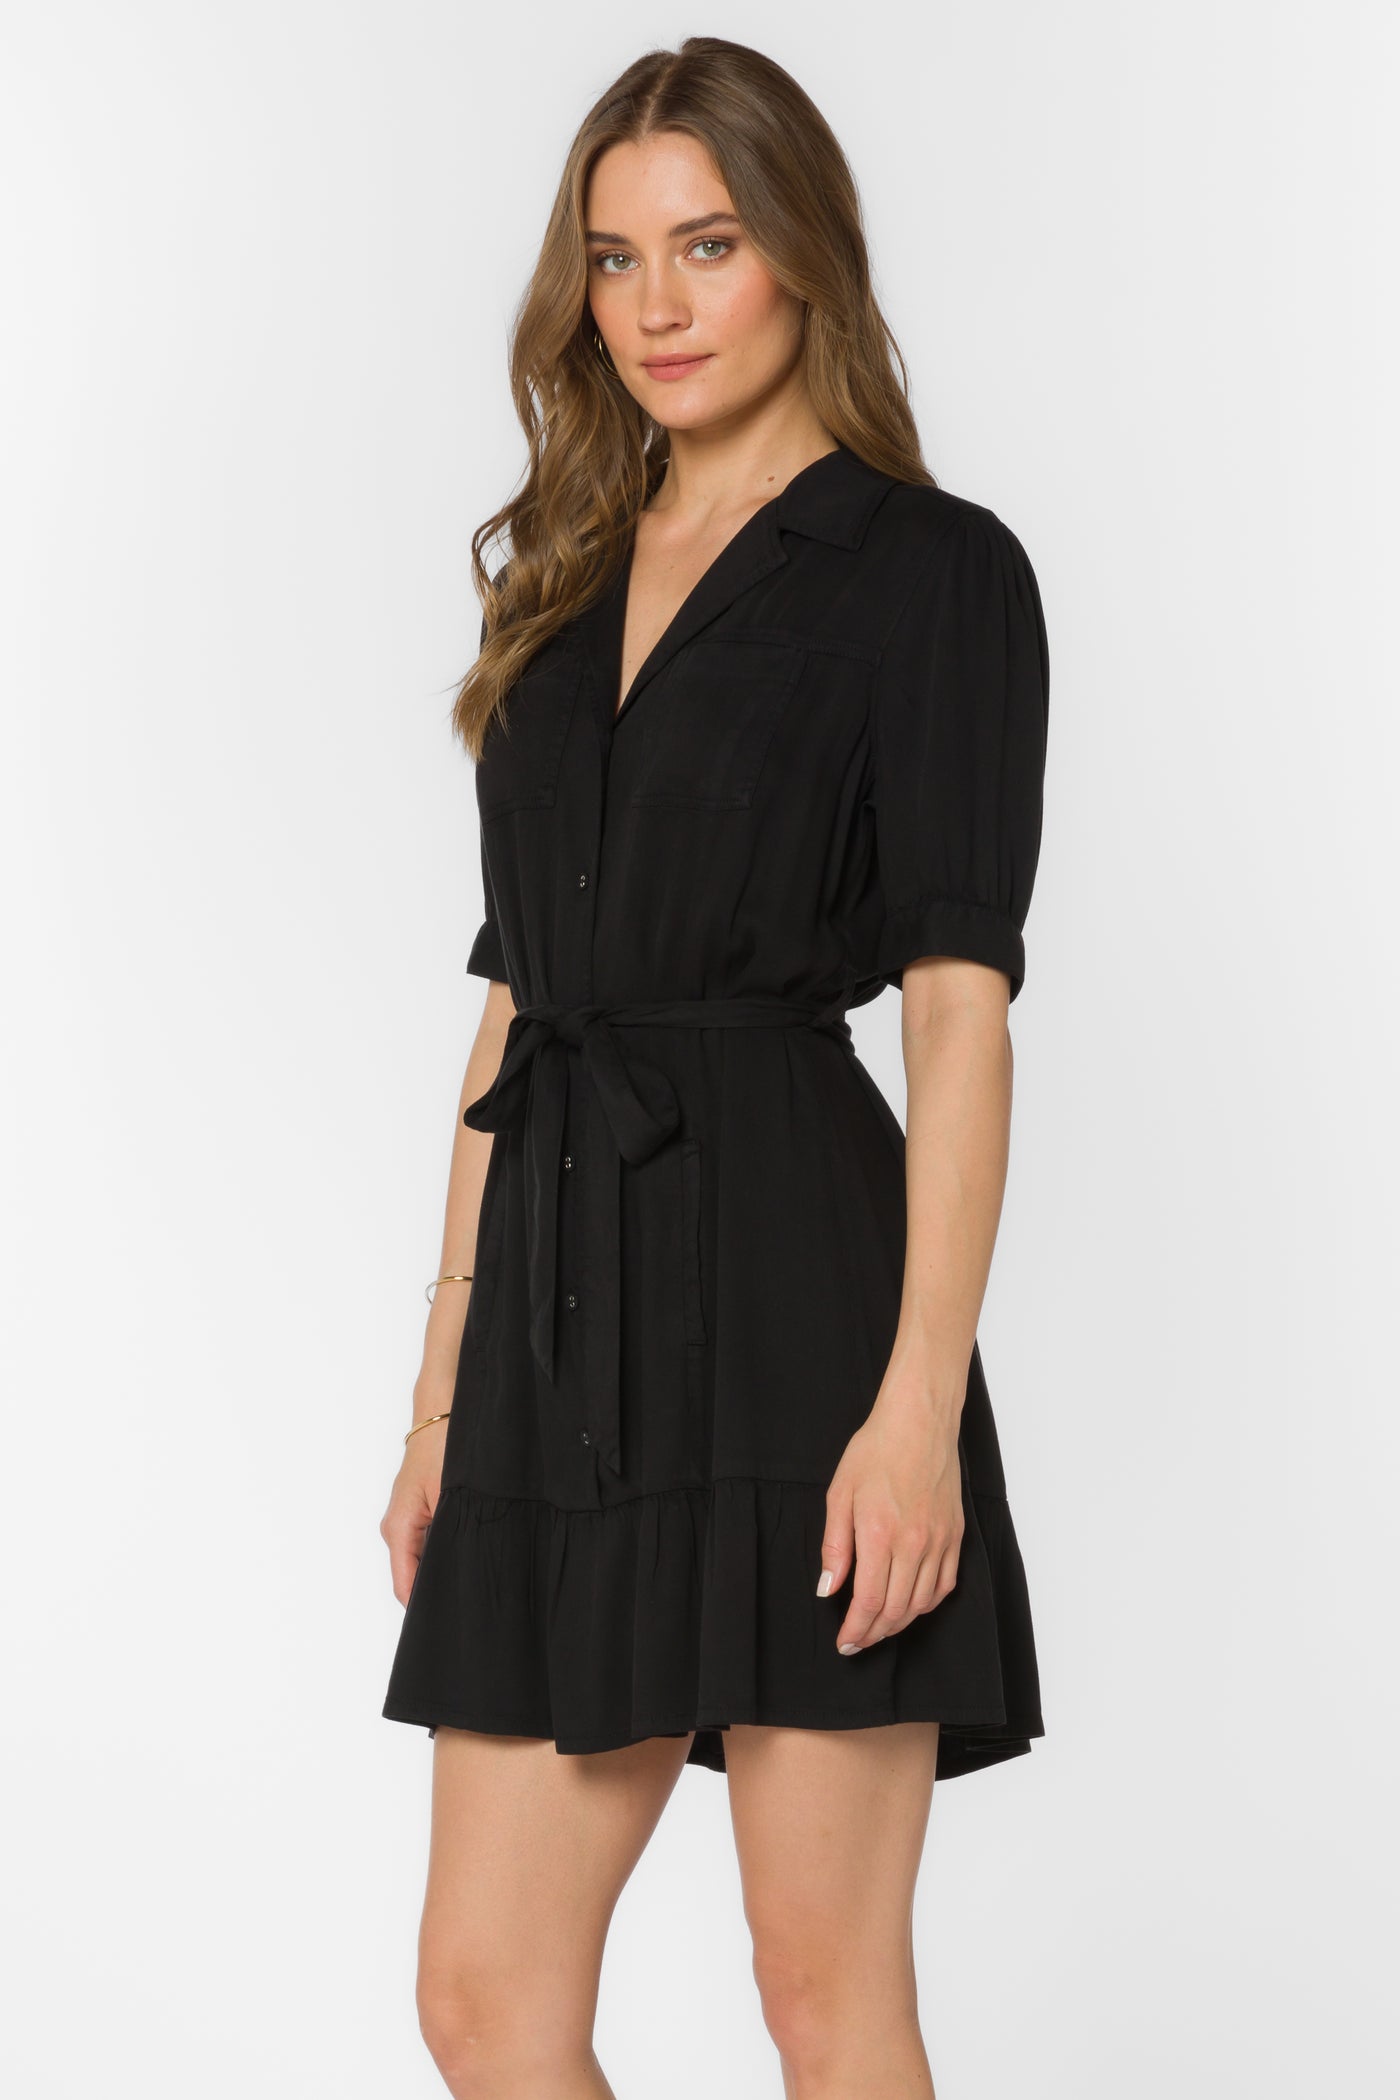 Belva Black Dress - Dresses - Velvet Heart Clothing